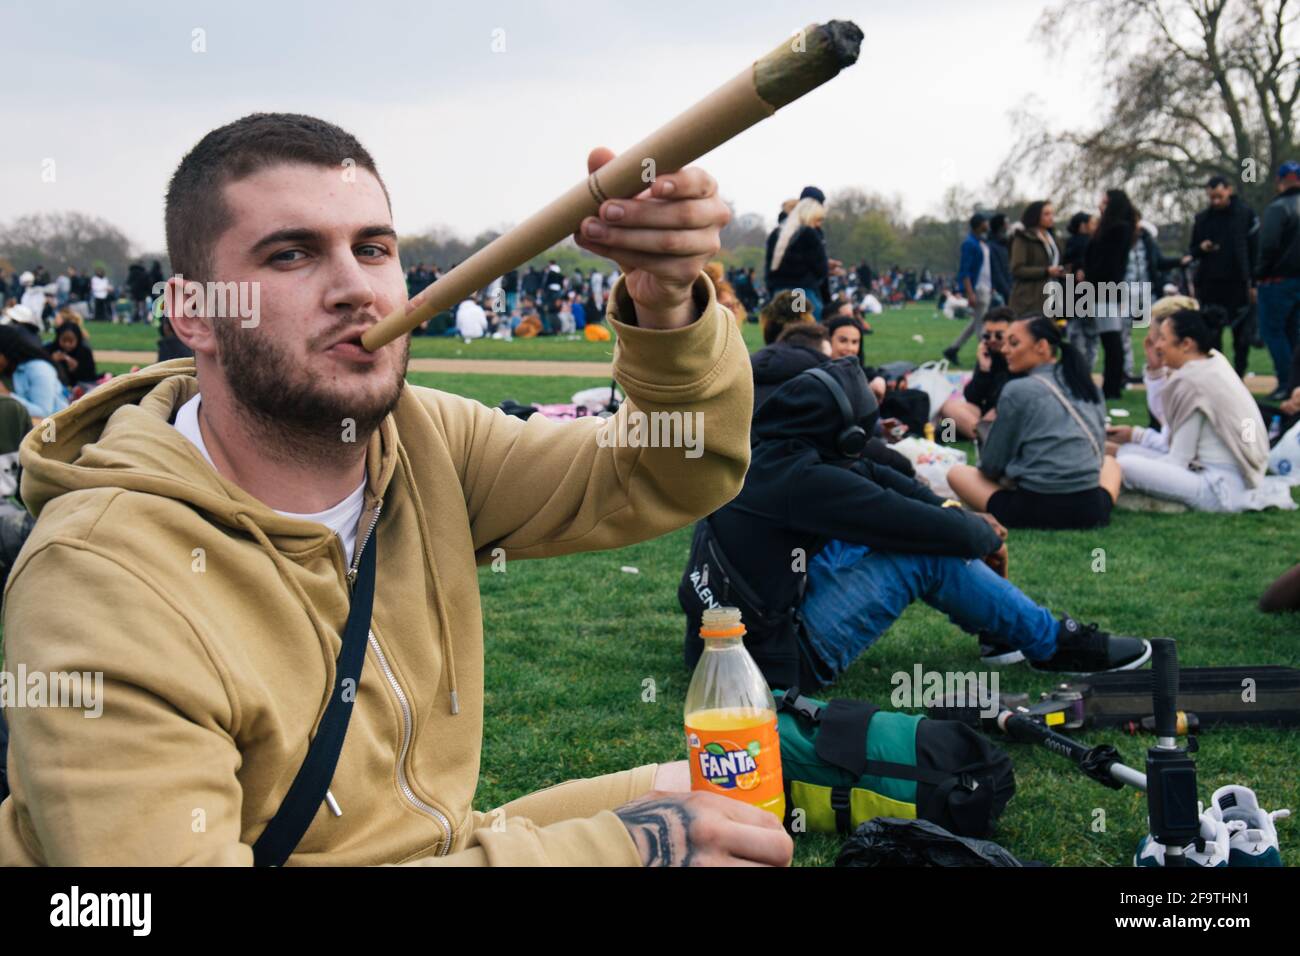 Londres, Royaume-Uni 4 avril 2021 des milliers de personnes se rassemblent à Hyde Park pour célébrer le « Weed Day » de 4/20 malgré les restrictions de la vile. La journée célèbre l'usage du cannabis et en appelle à la légalisation. Banque D'Images